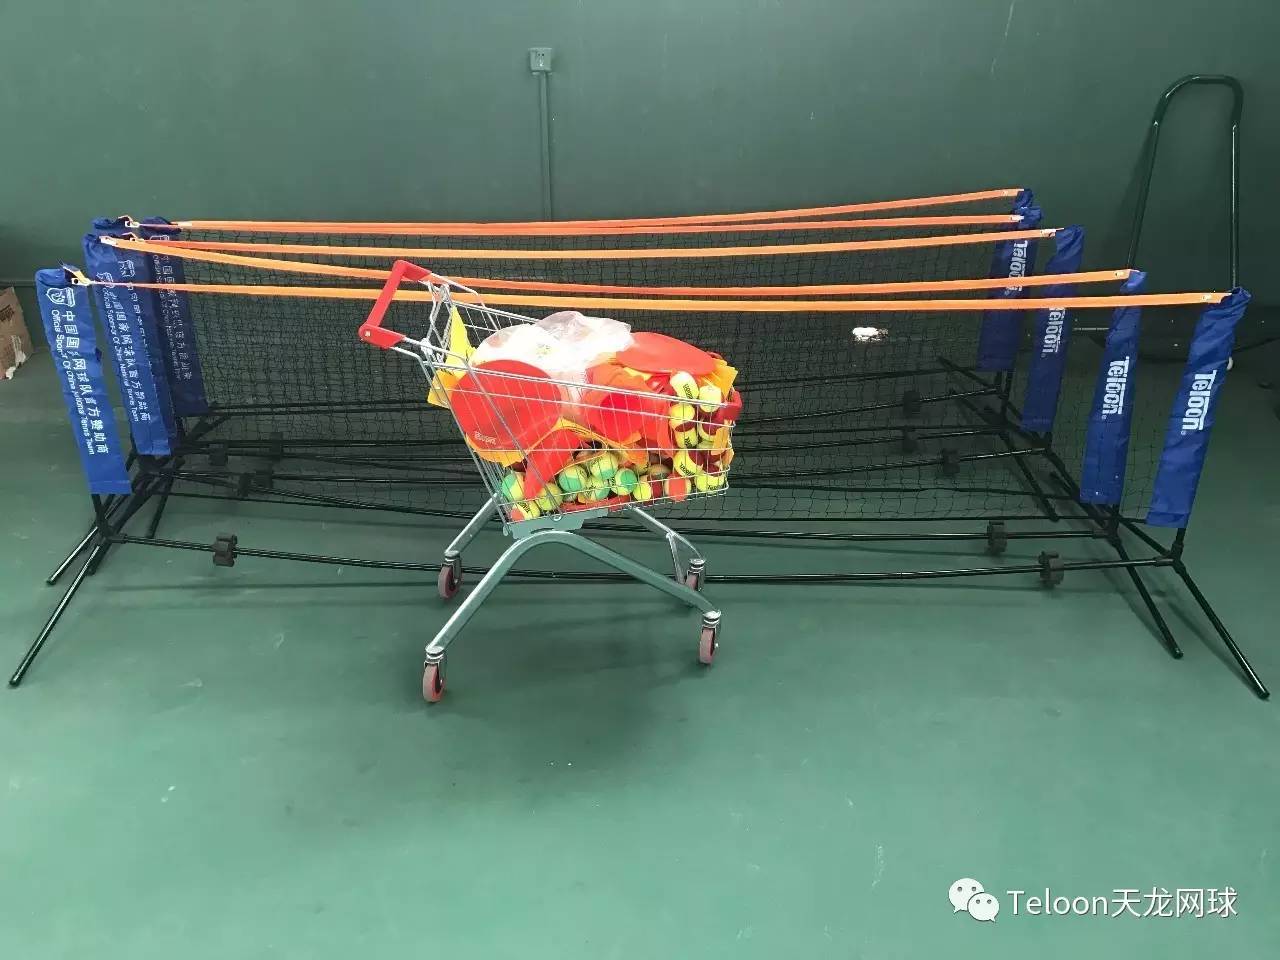 2017中国网球协会快易网球教练员 襄阳培训